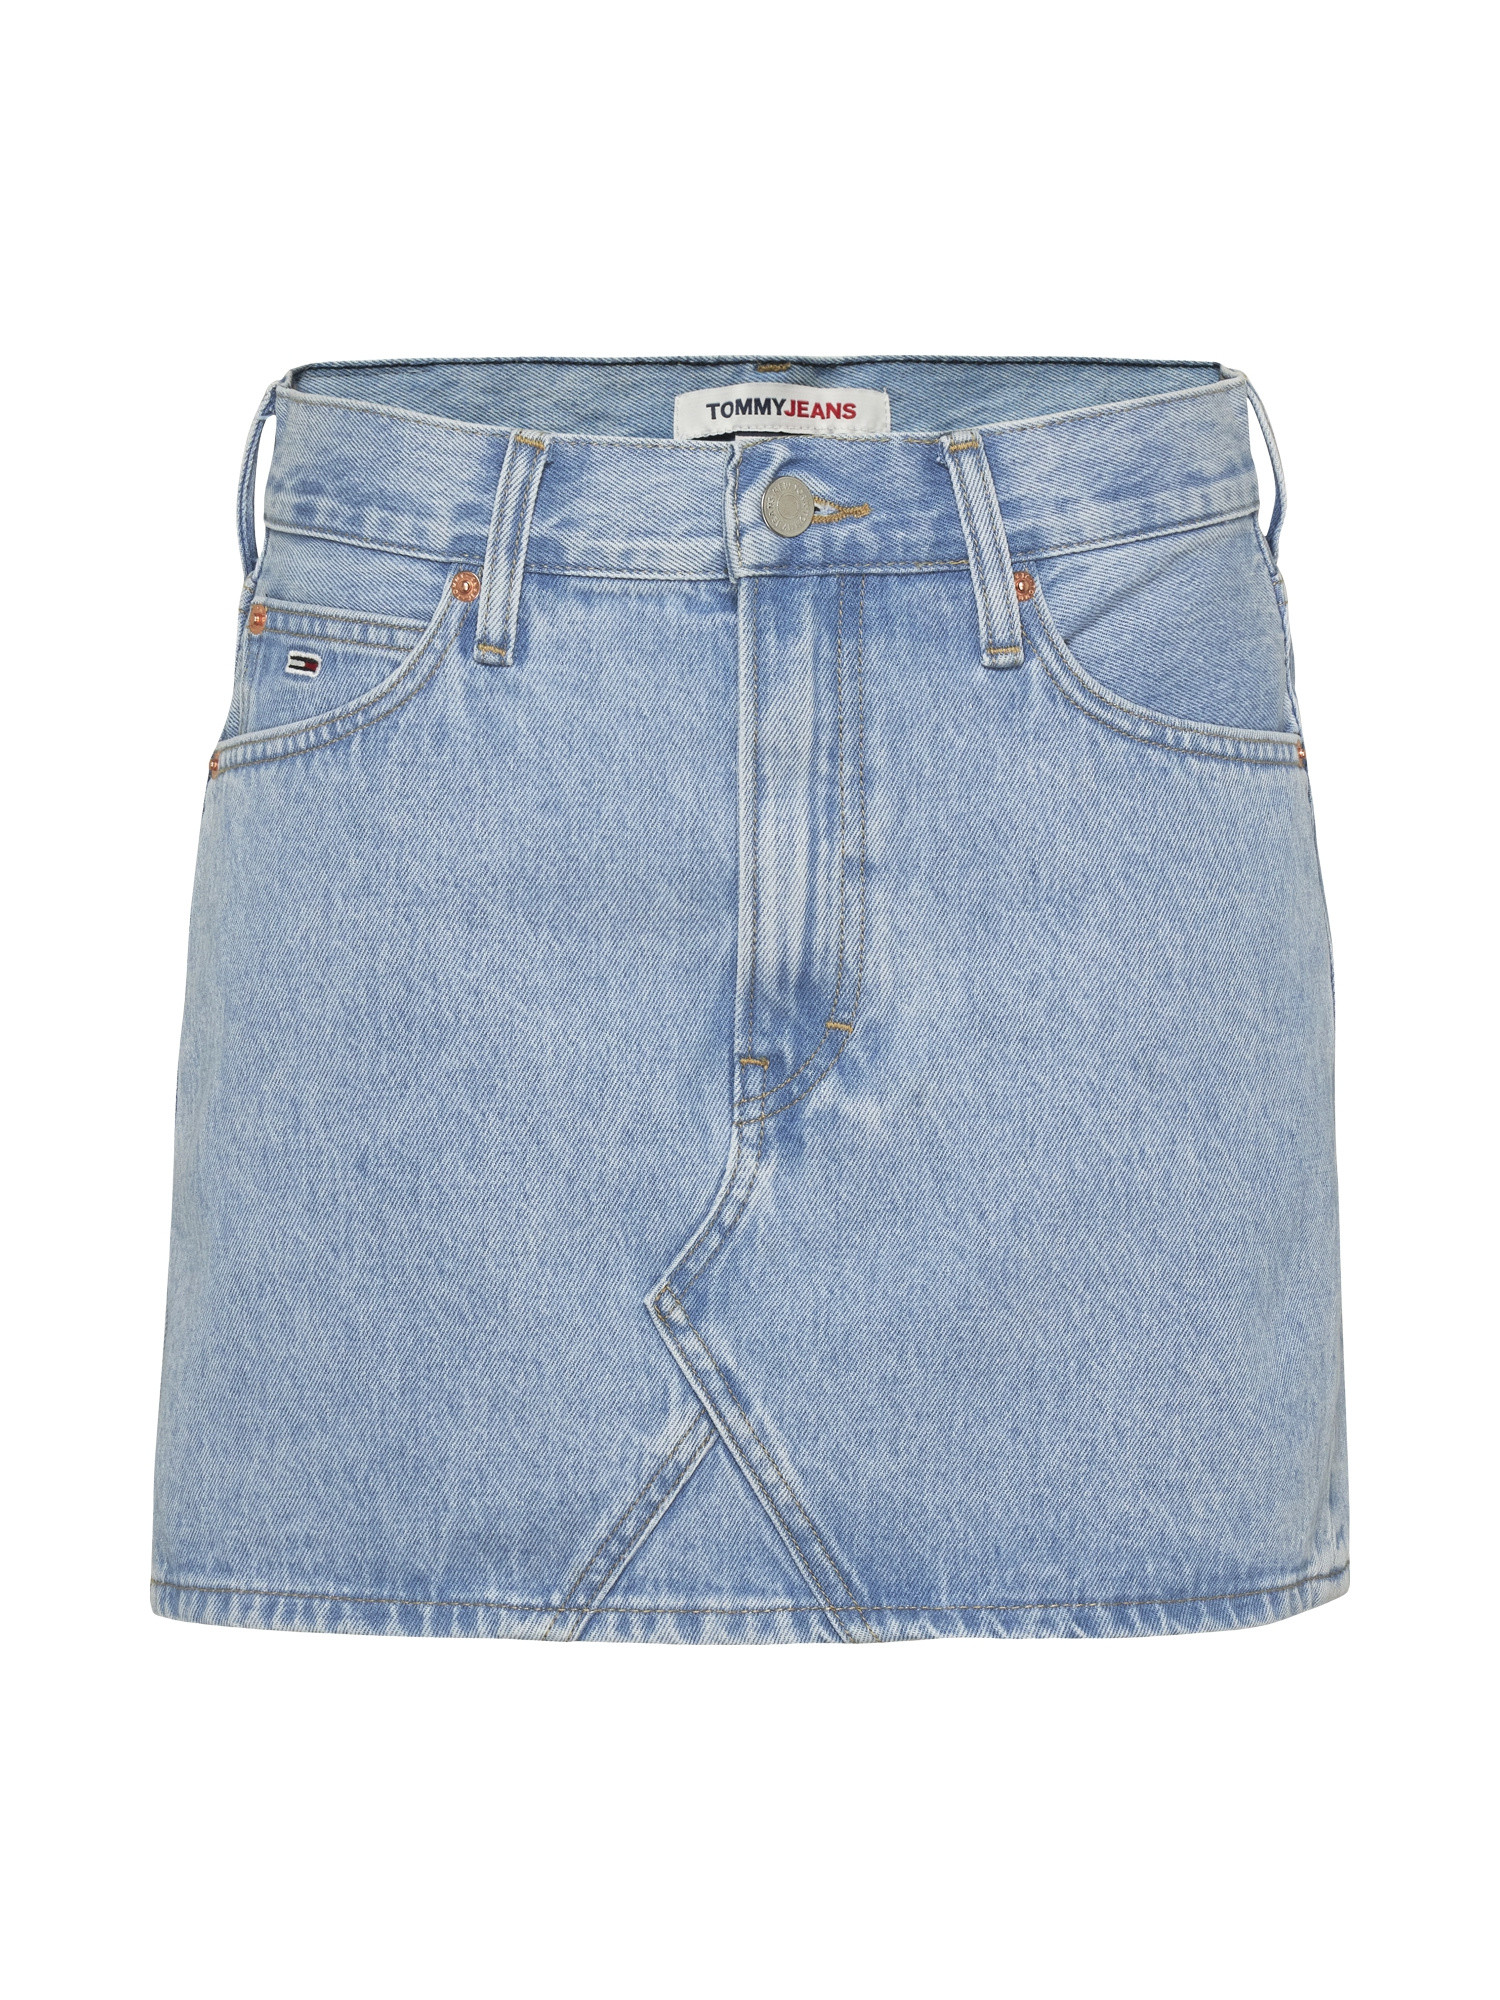 Tommy Jeans - Minigonna in denim cinque tasche, Denim, large image number 0